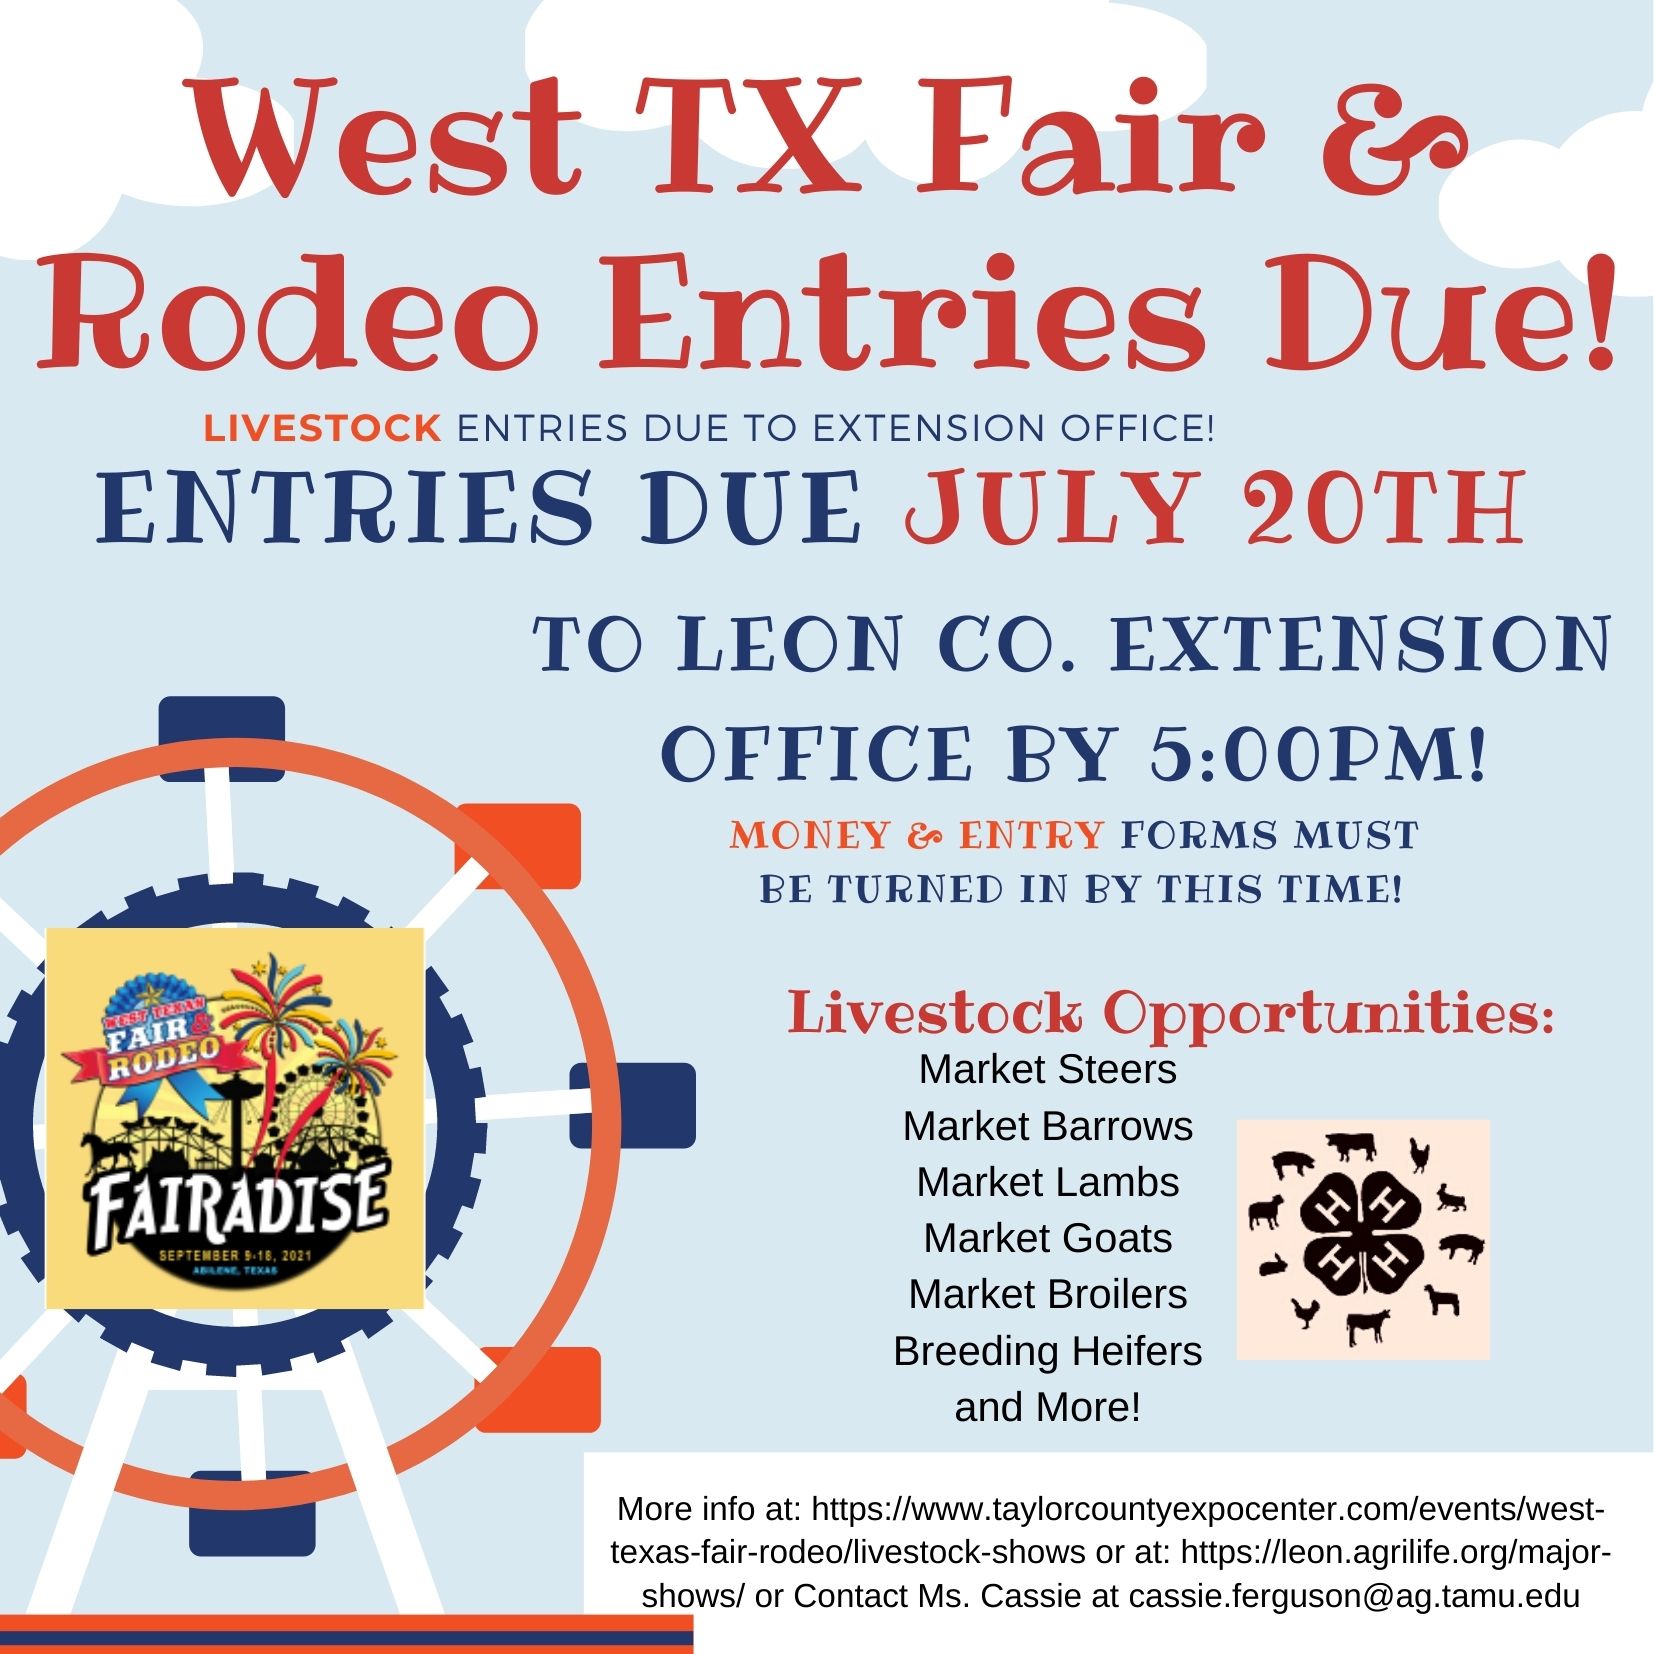 WEst TX Fair Entries Due july 20th